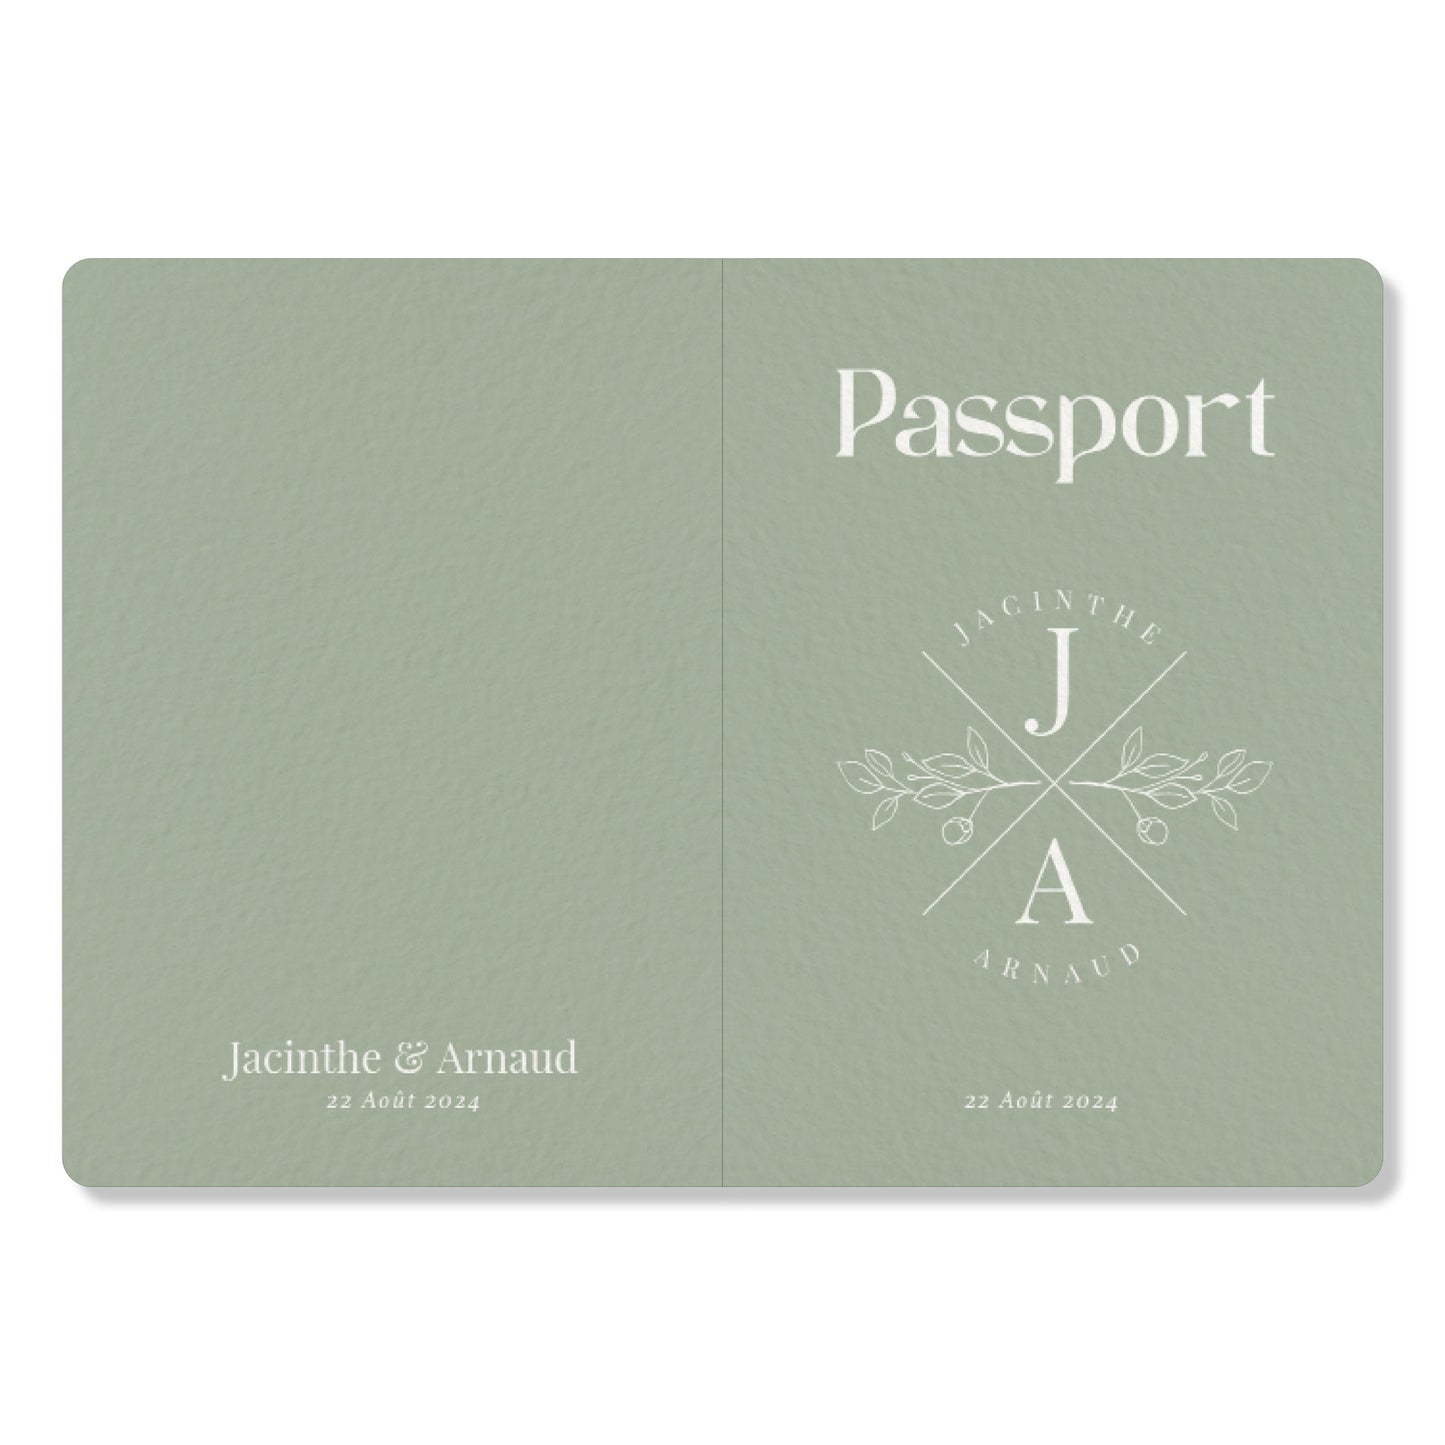 PACK faire-part passport + carton billet d'avion, vert